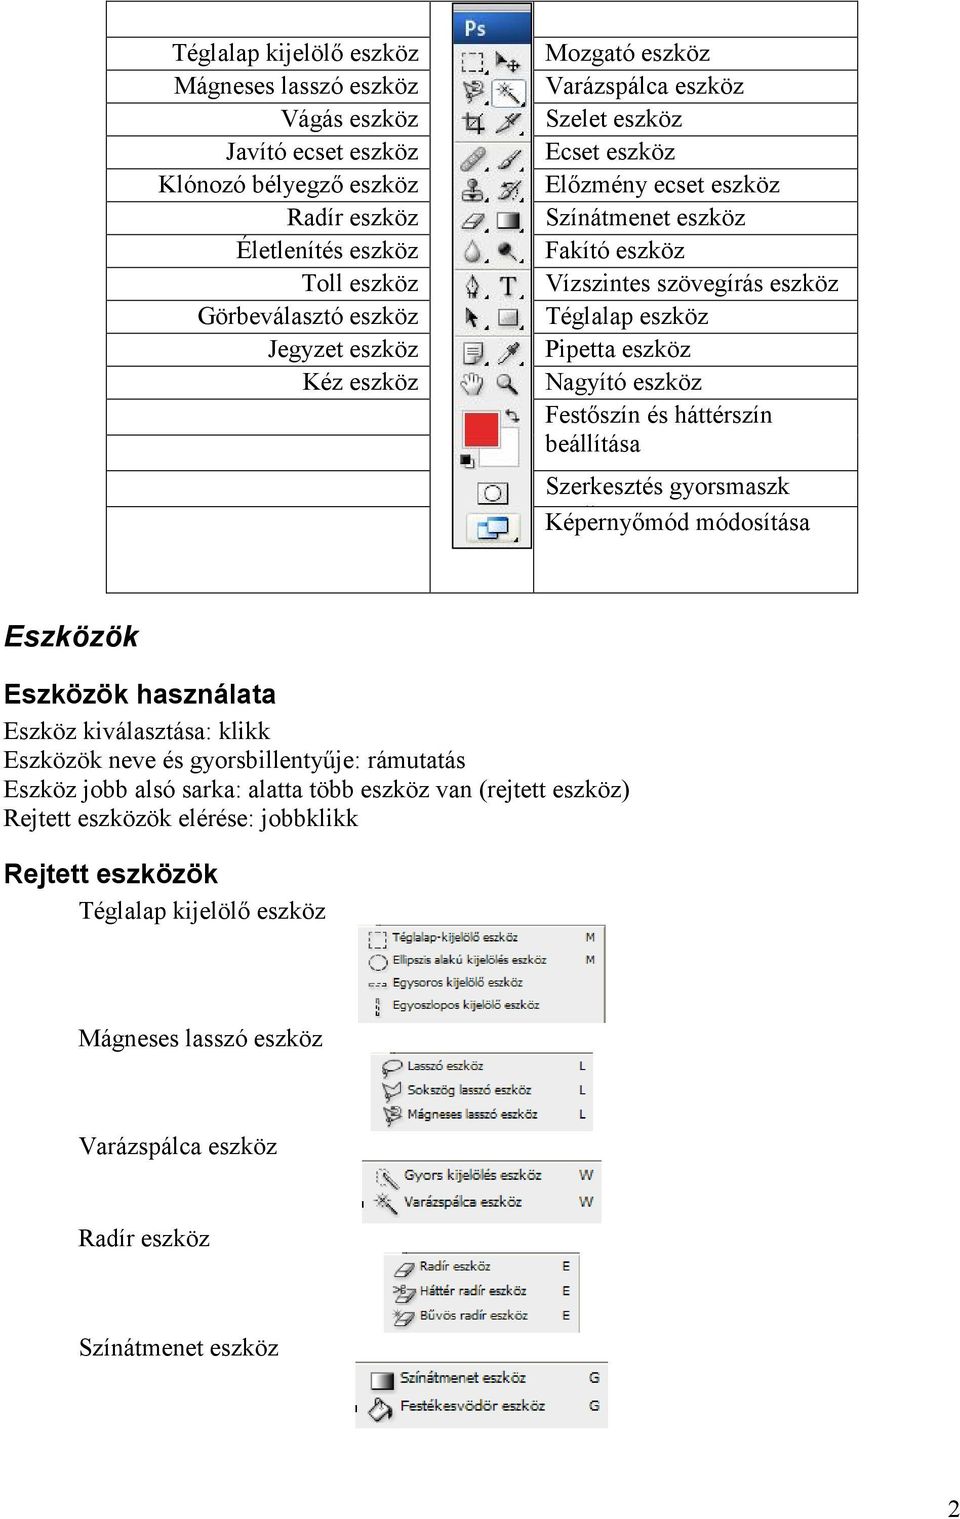 Festőszín és háttérszín beállítása Szerkesztés gyorsmaszk módban Képernyőmód módosítása Eszközök Eszközök használata Eszköz kiválasztása: klikk Eszközök neve és gyorsbillentyűje: rámutatás Eszköz